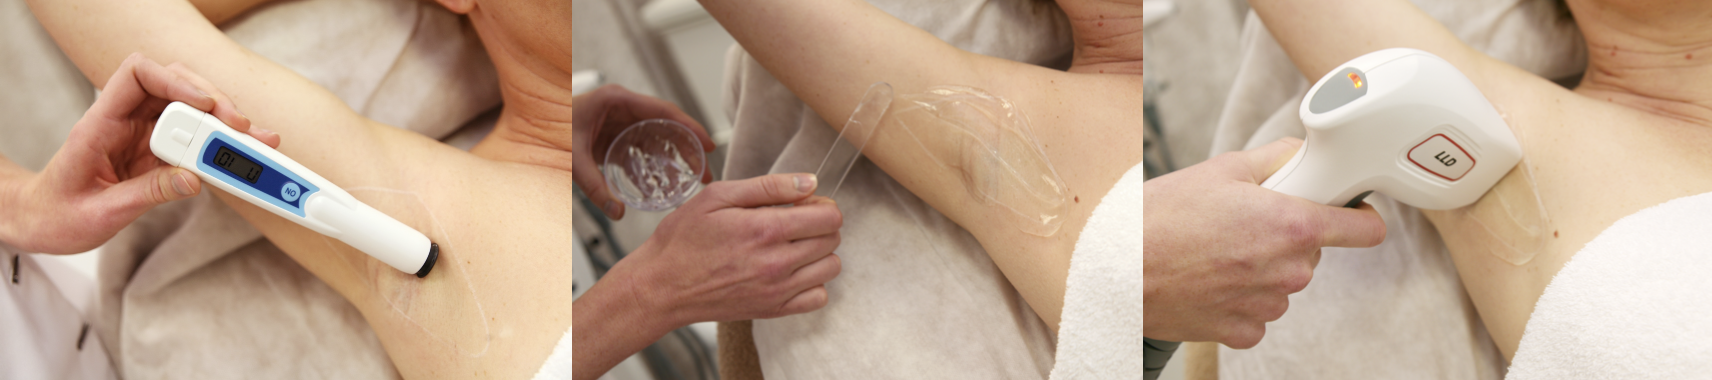 Een vrouw krijgt een laserontharingsbehandeling op haar onderarm.